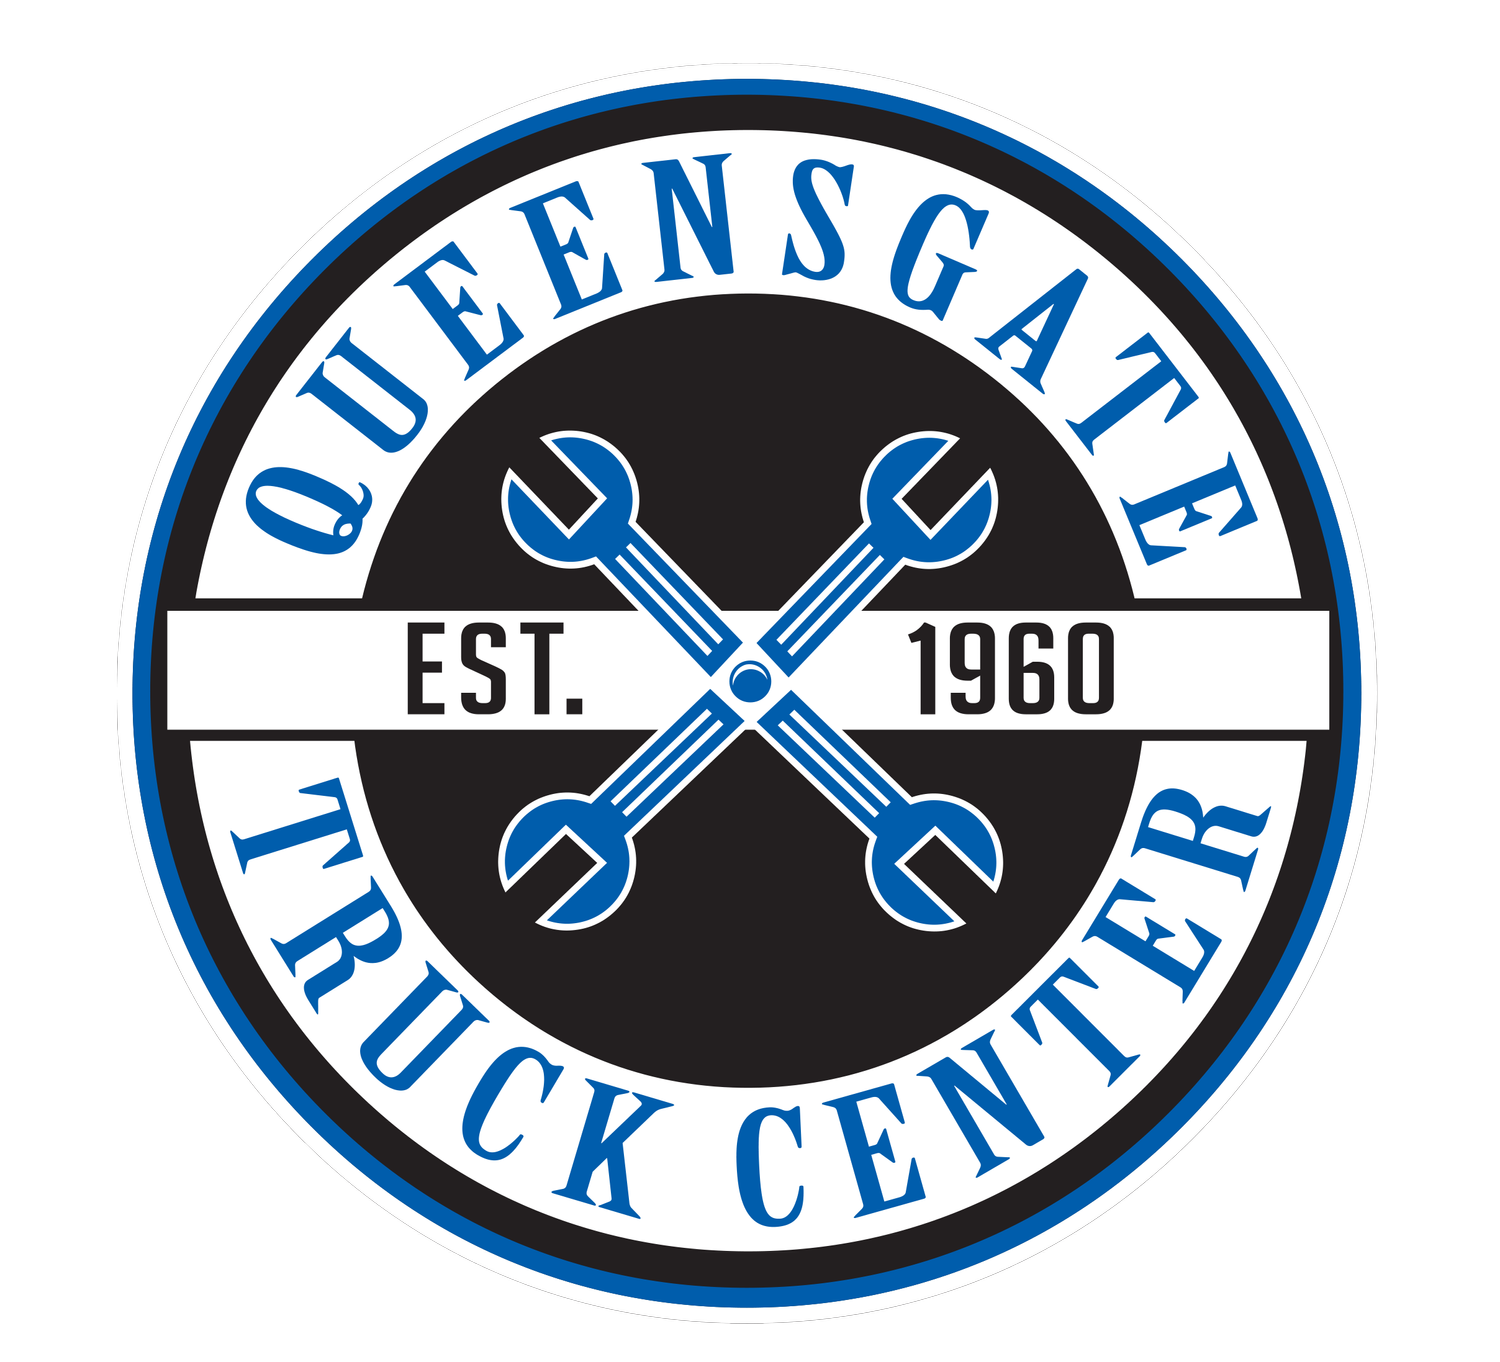 Queensgate Truck Center